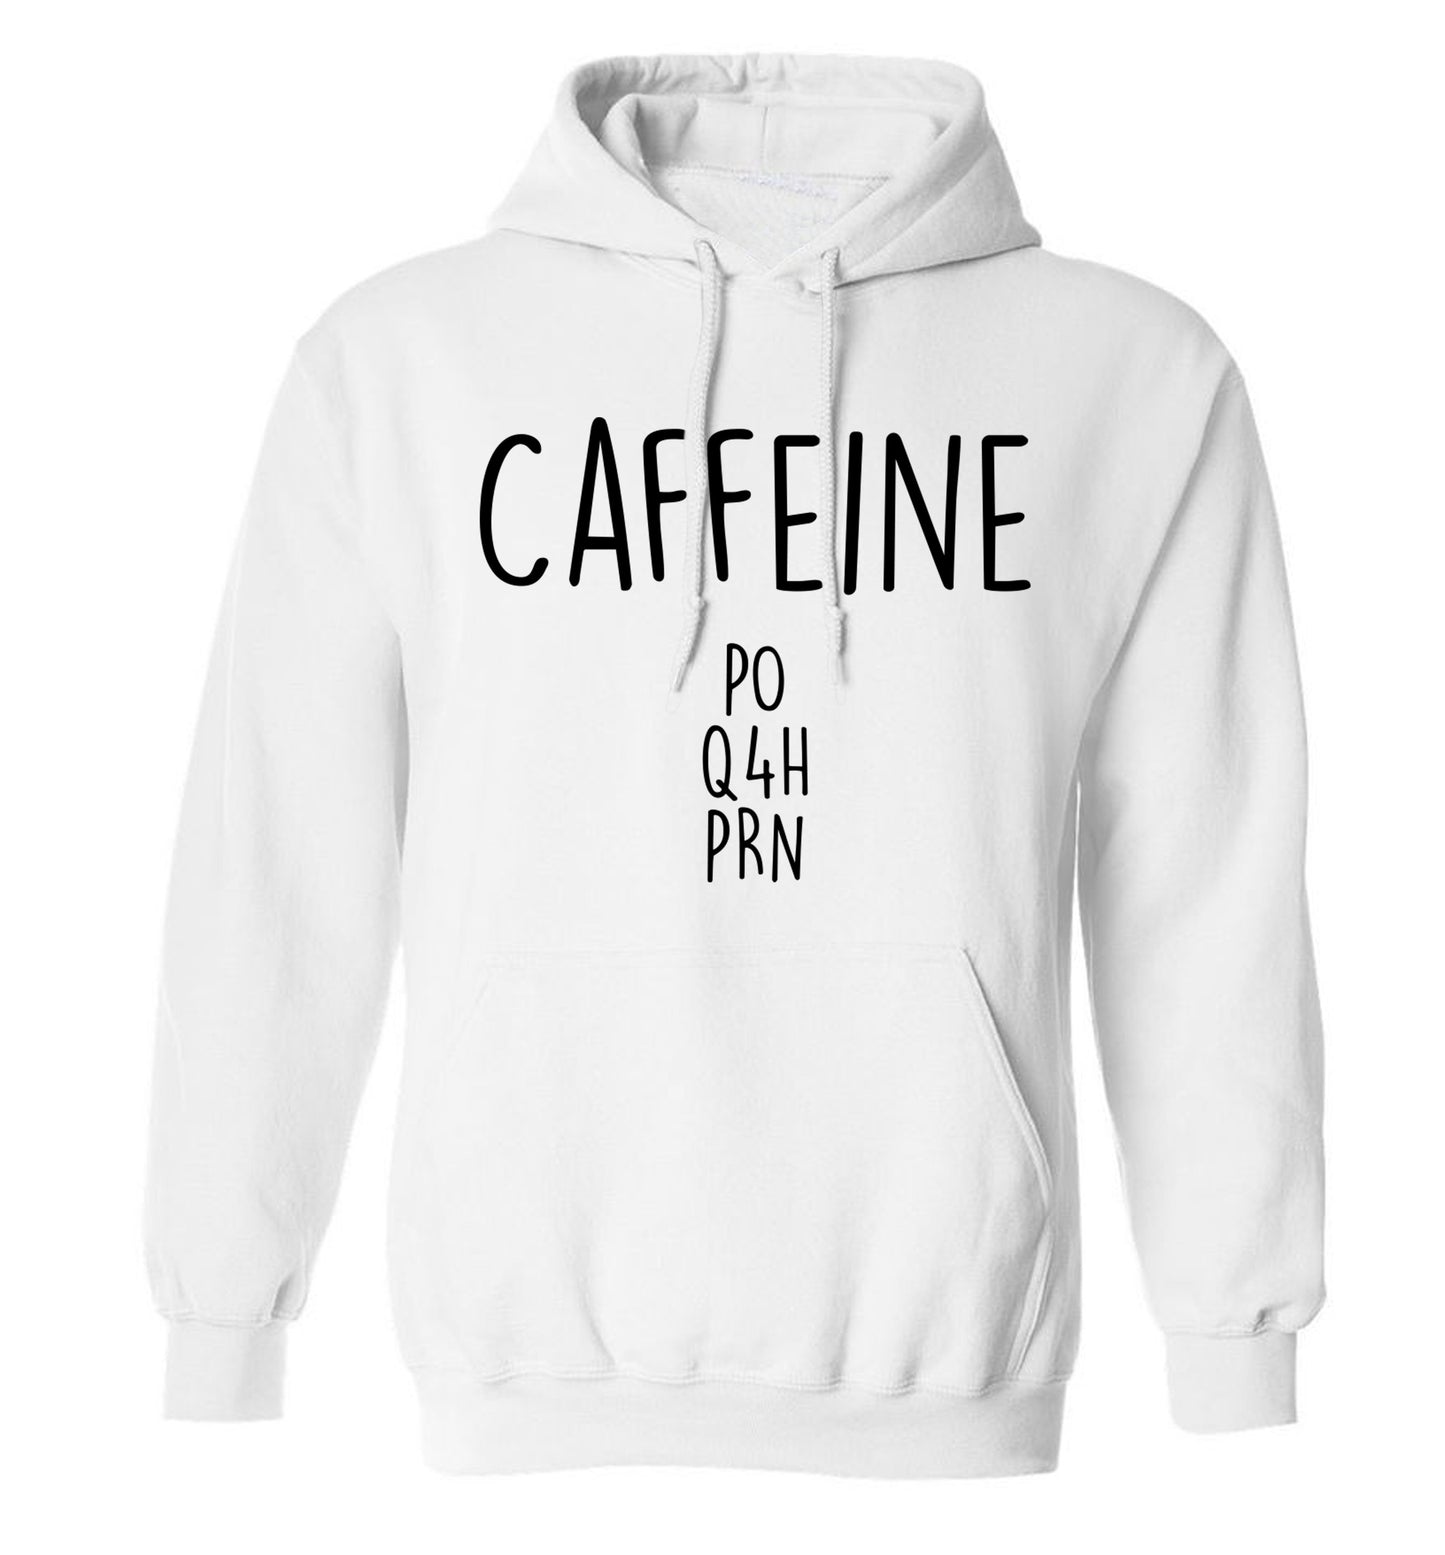 Caffeine PO Q4H PRN adults unisex white hoodie 2XL